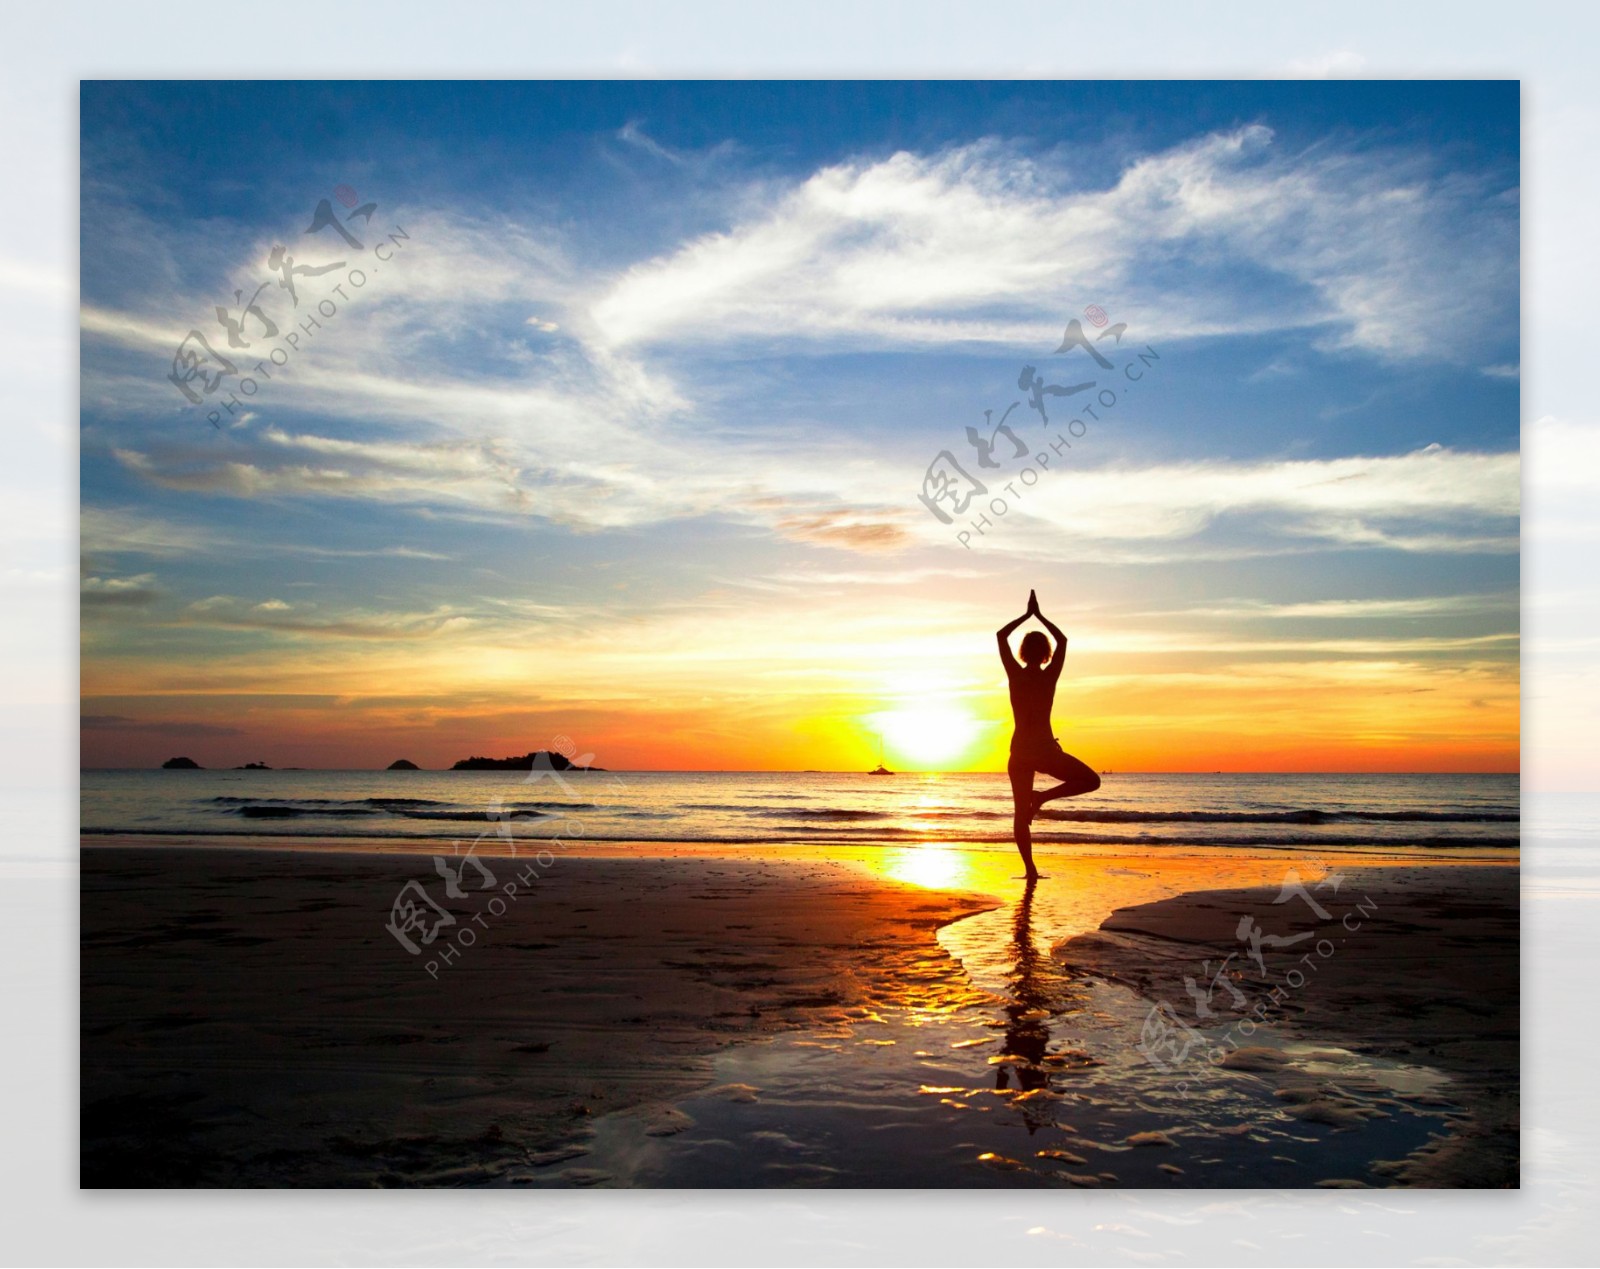 黄昏海滩练瑜伽的女人图片